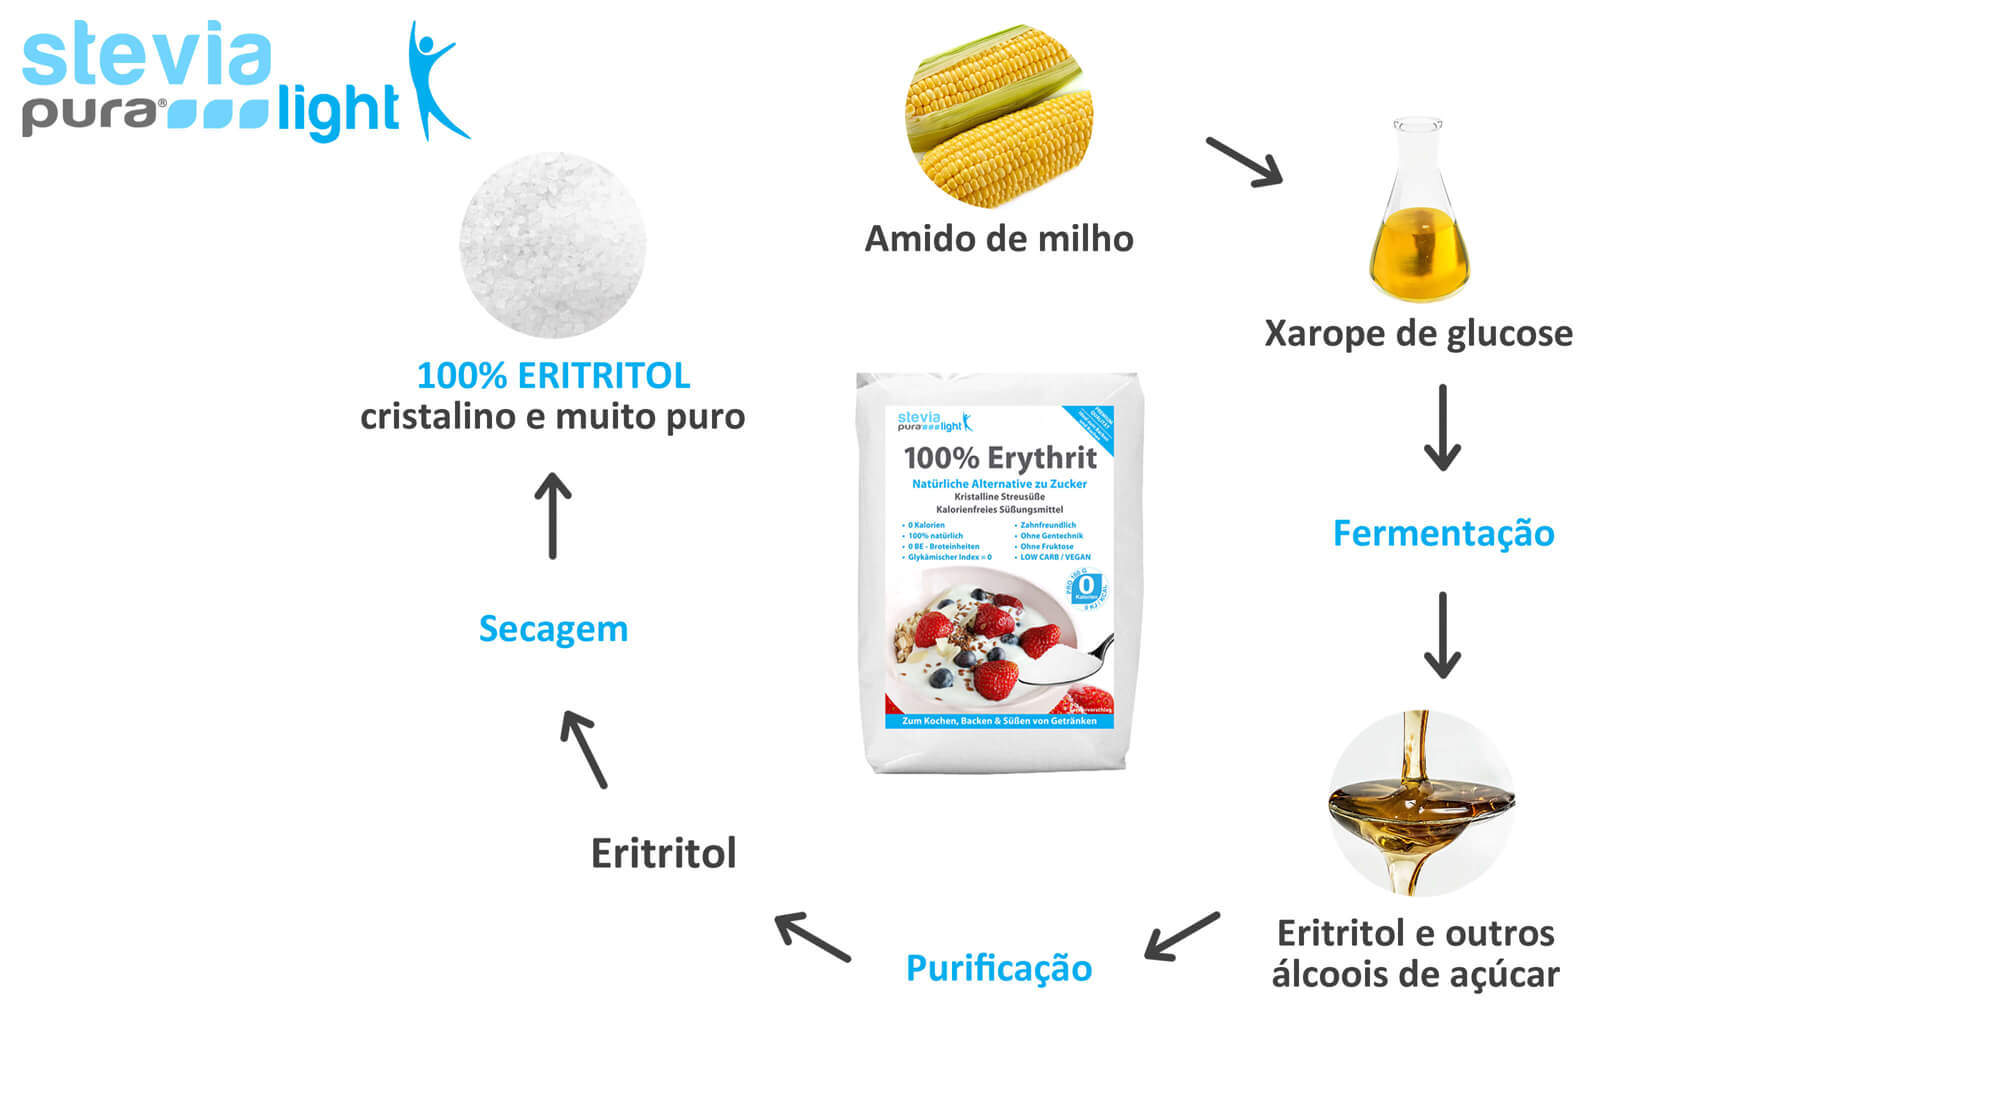 A produção de Eritritol: O Eritritol é obtido através da fermentação.